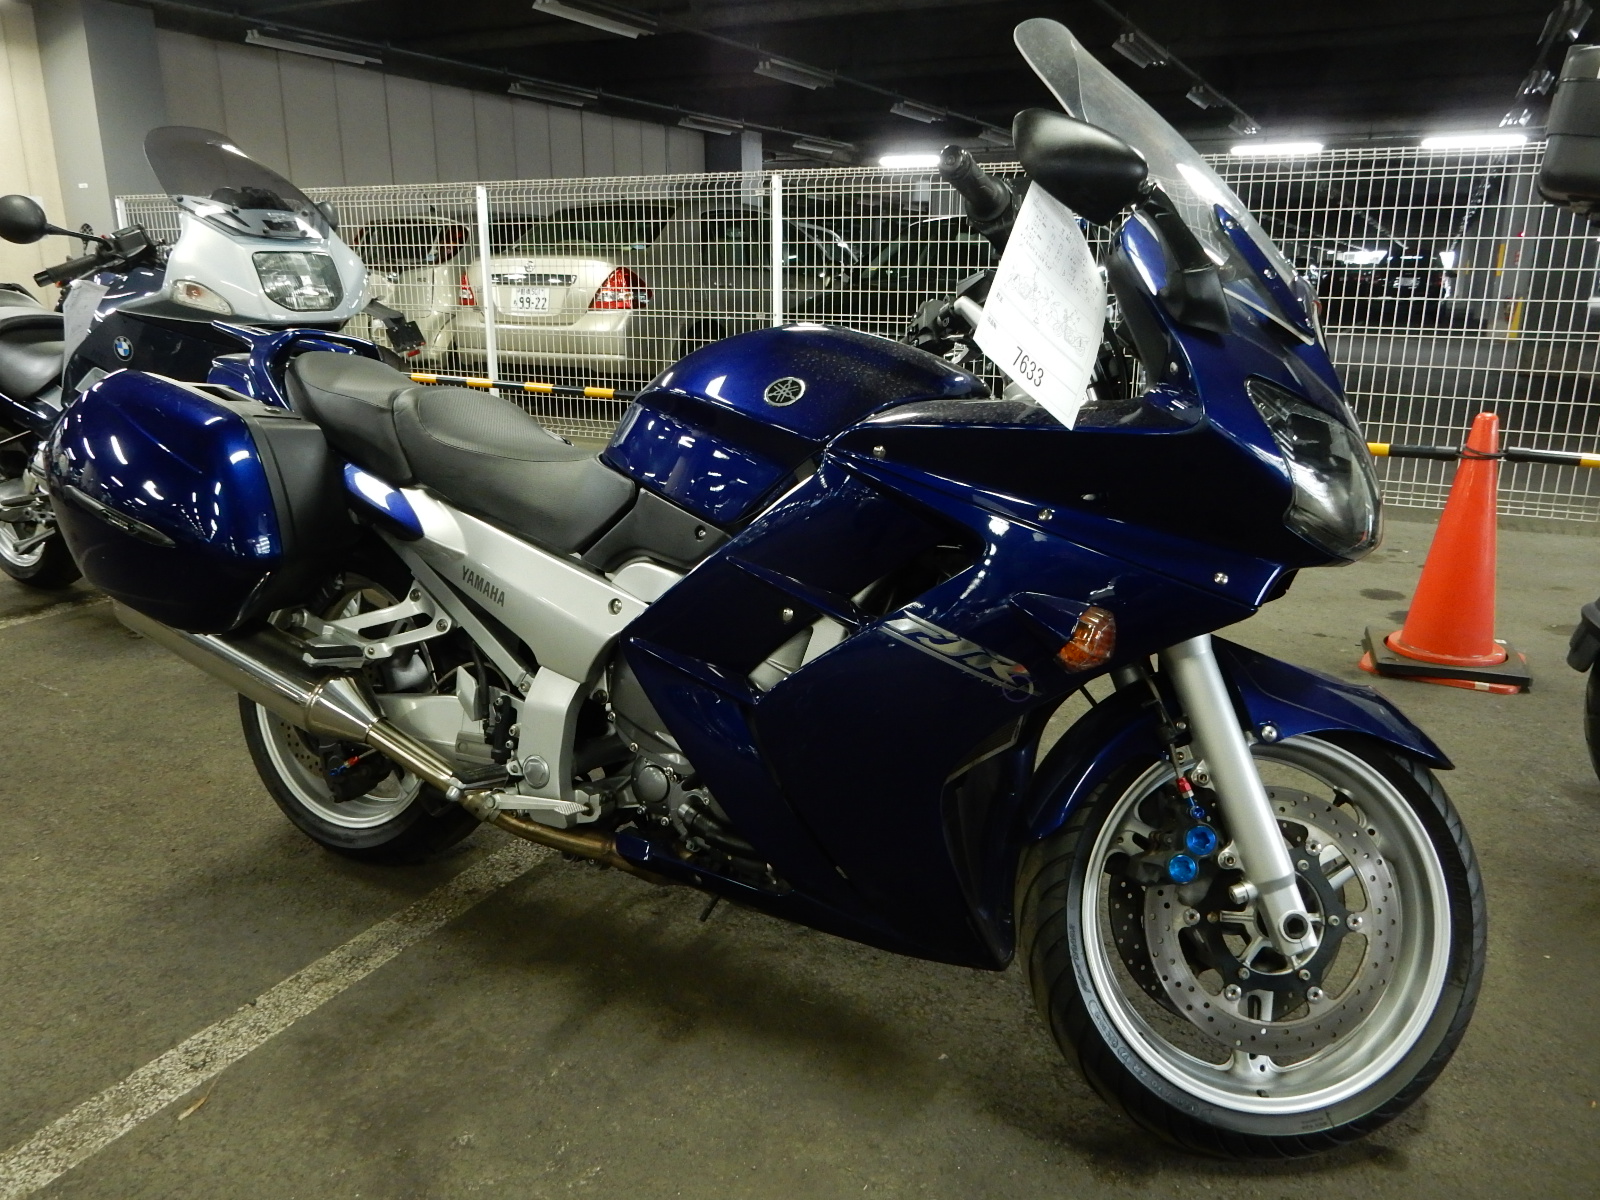 Мотоцикл yamaha 1300. Yamaha Jr 1300. Мотоцикл Yamaha FJR. Yamaha fjr1300 2015. FJR мотоцикл Ямаха.